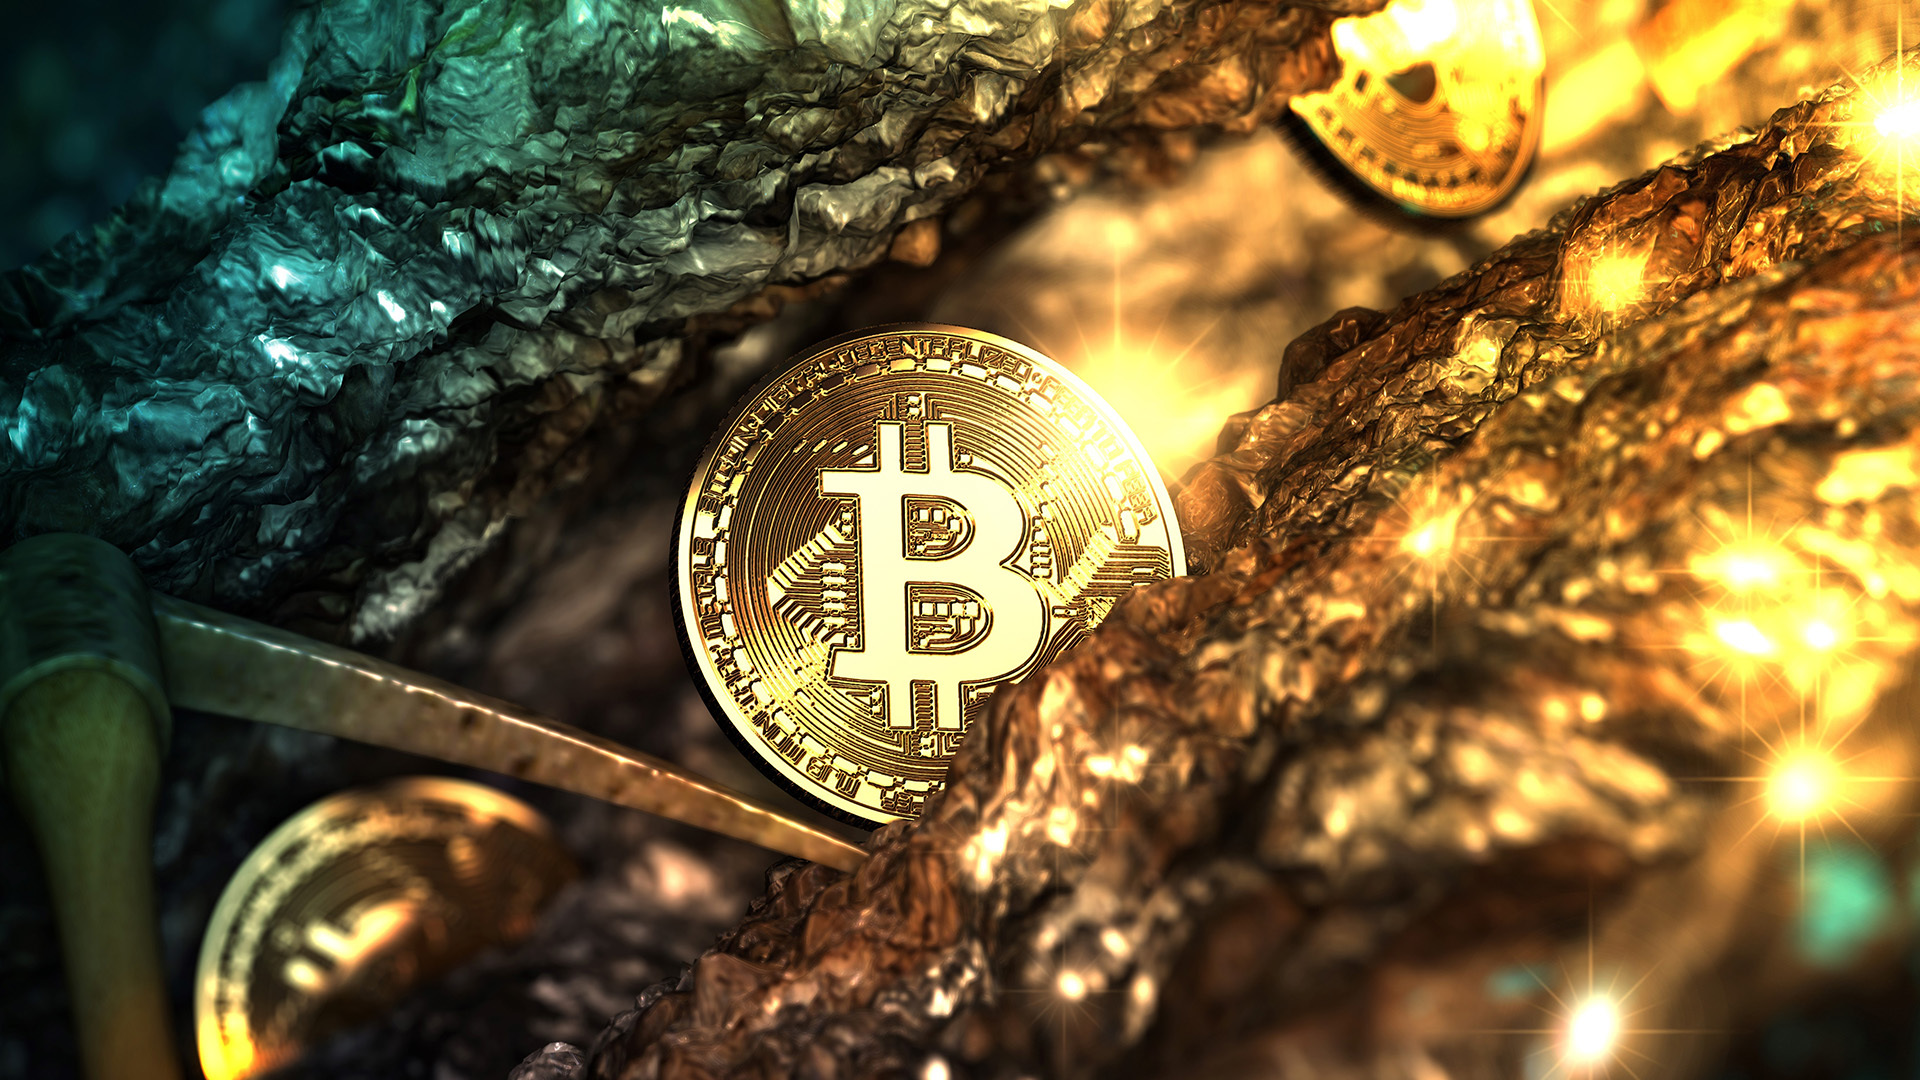 Viharos idők jönnek – Bitcoint, aranyat vagy valami mást kell most venni?